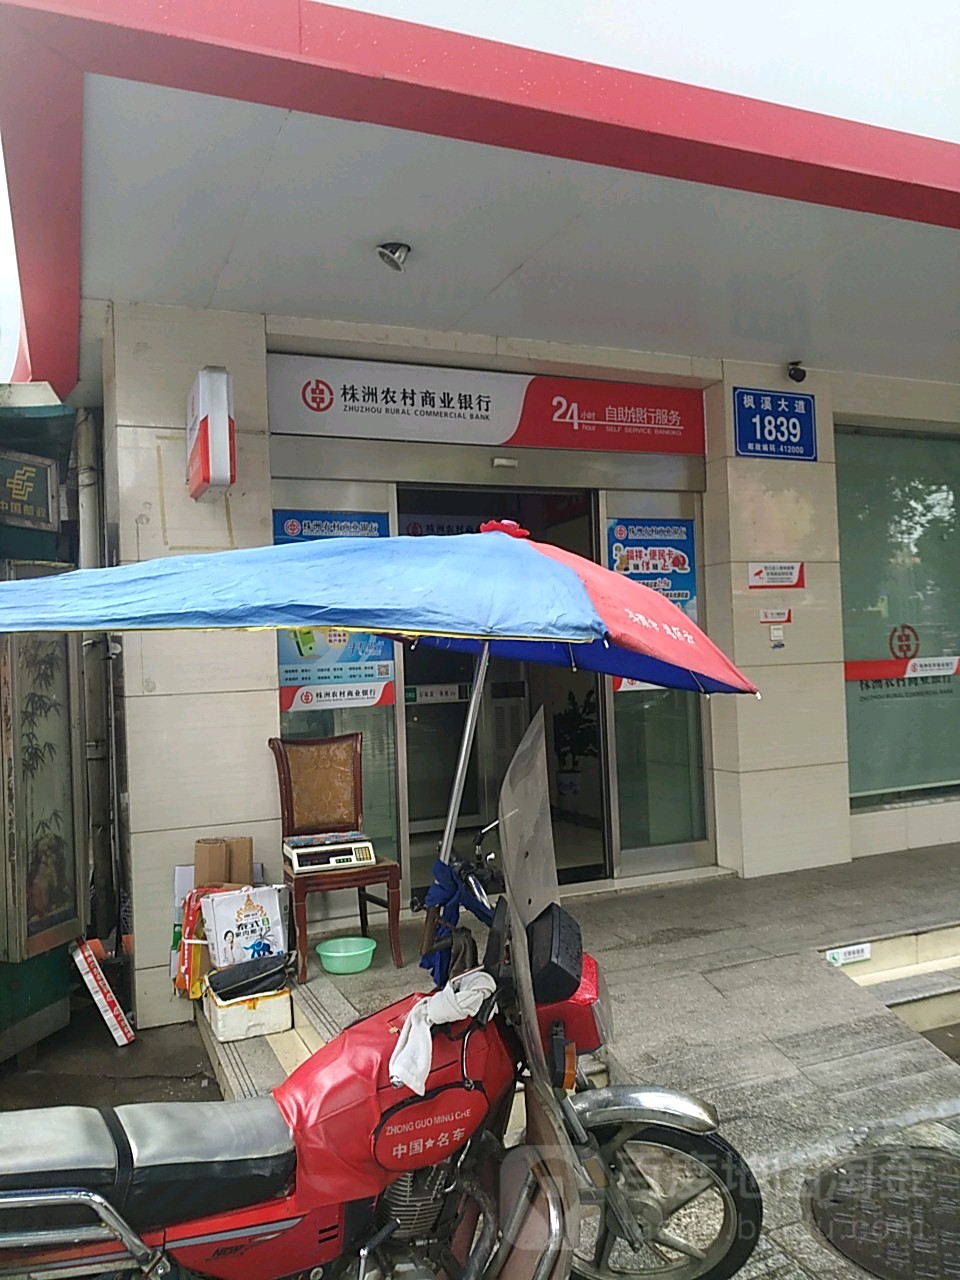 株洲农村商业银行24小自助助银行服务(曲尺支行)